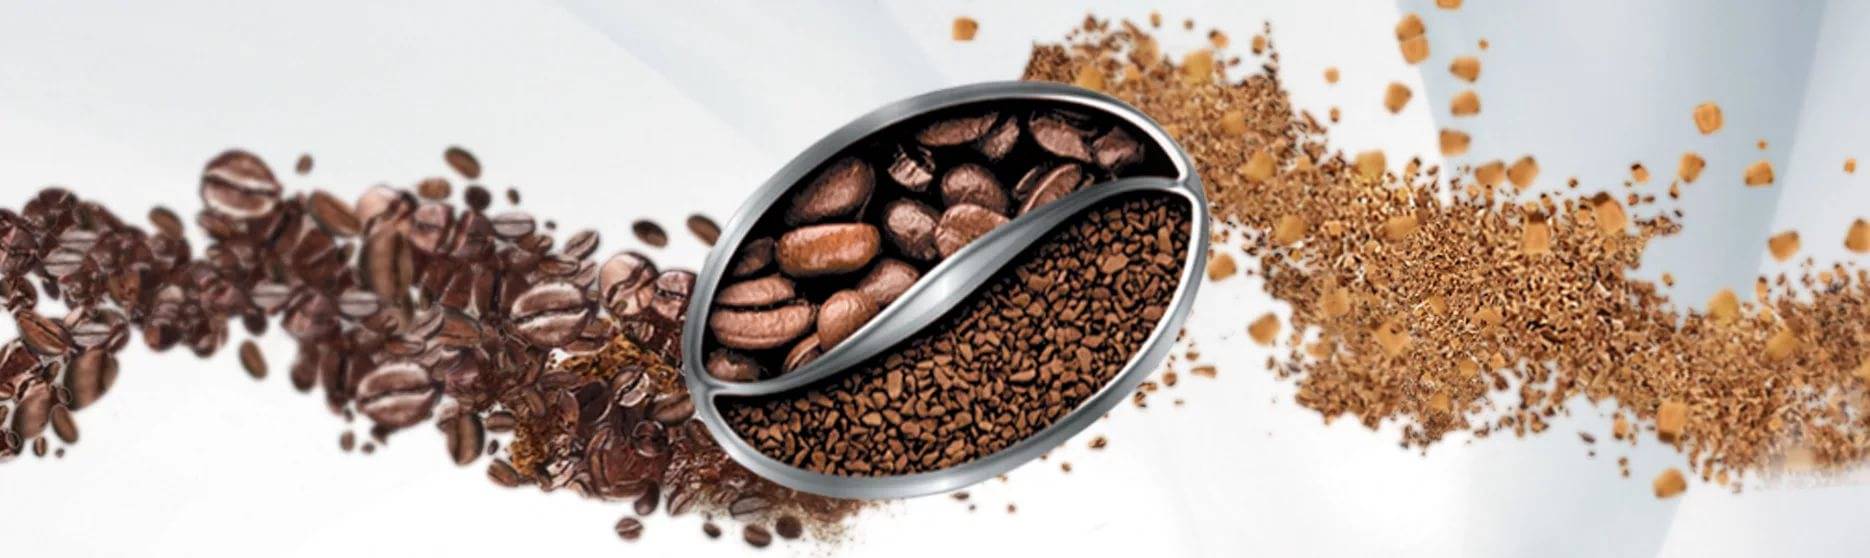 Характеристики и советы по выбору сублимированного кофе